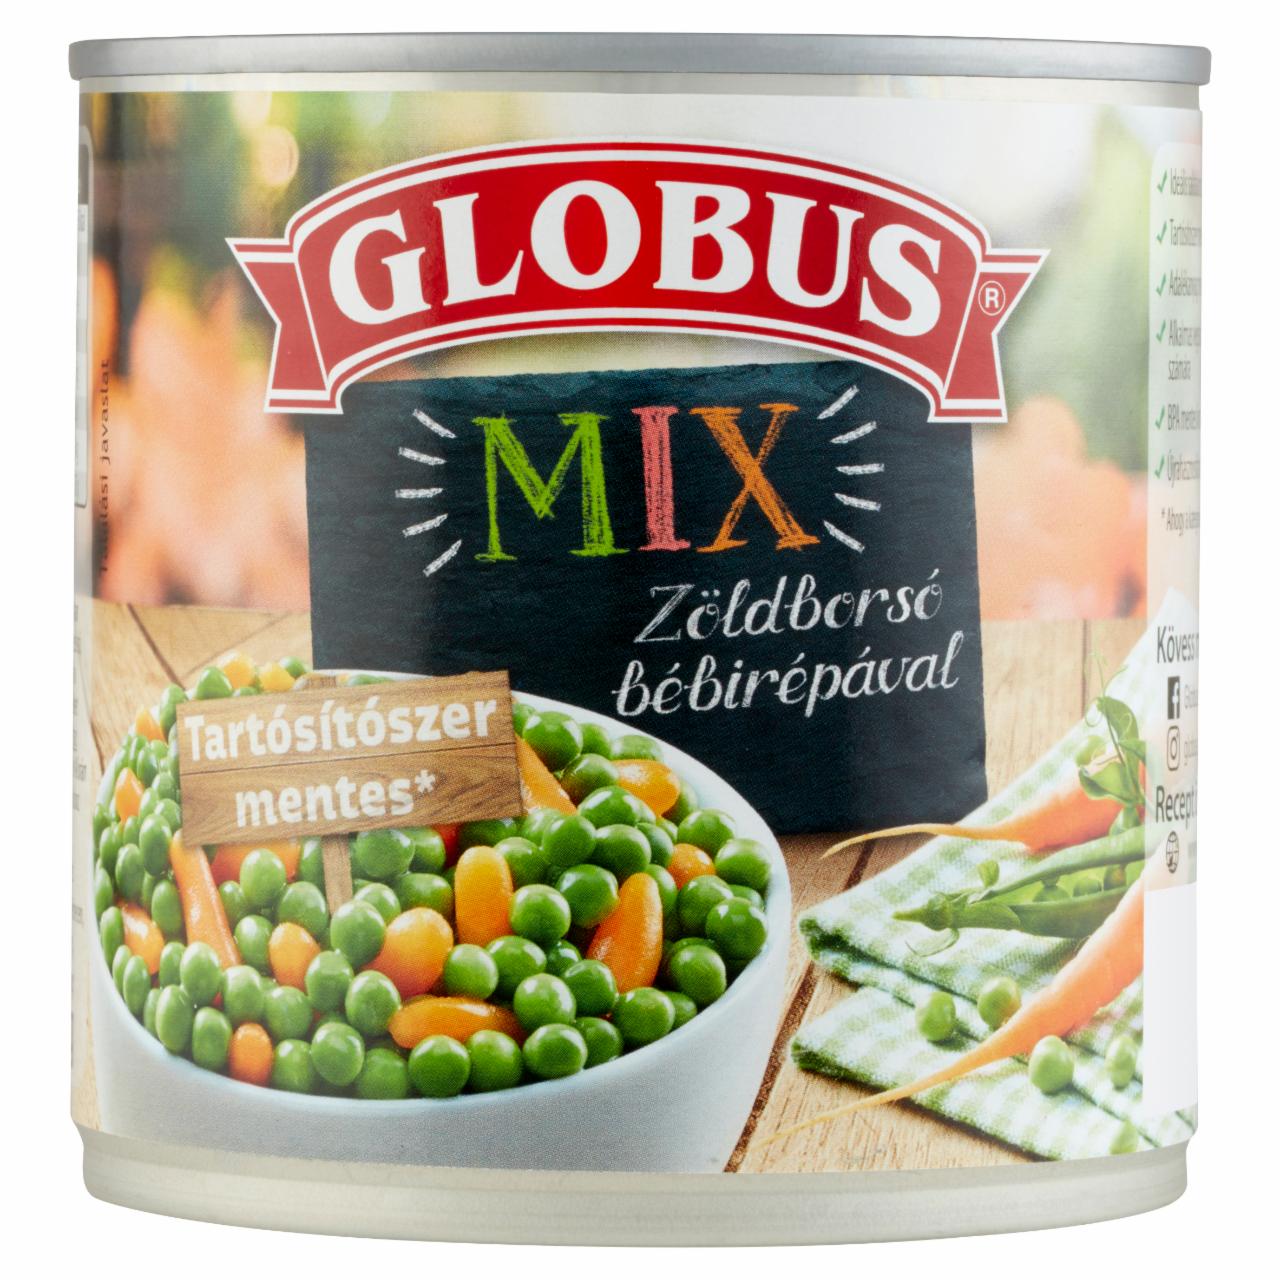 Képek - Globus Mix zöldborsó bébirápával 400 g